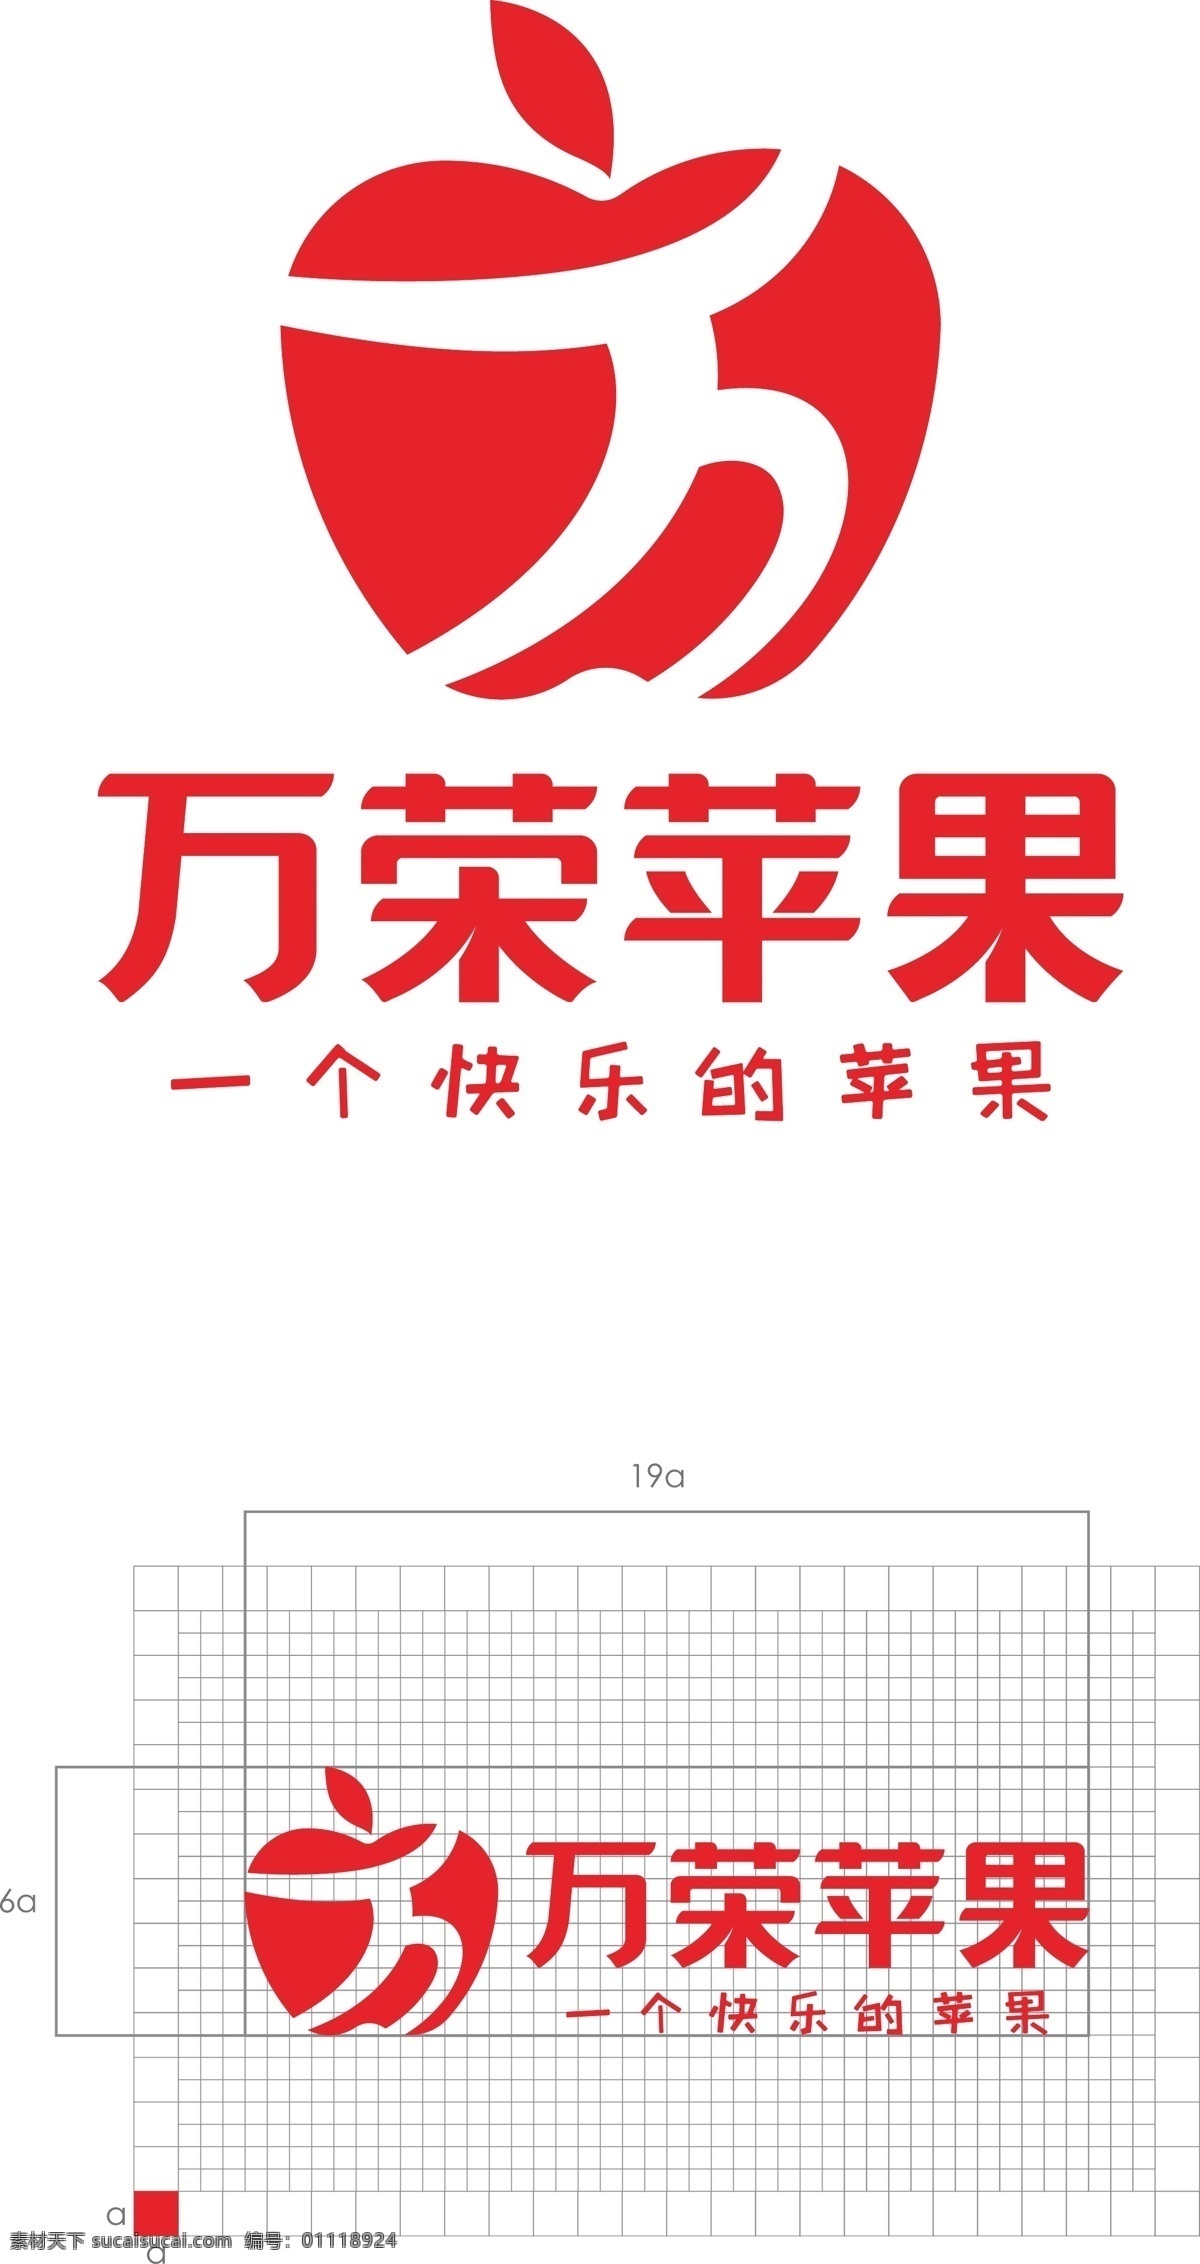 万荣 苹果 logo 时尚 简单 大气 标志图标 网页小图标 万荣苹果 山西苹果 logo设计